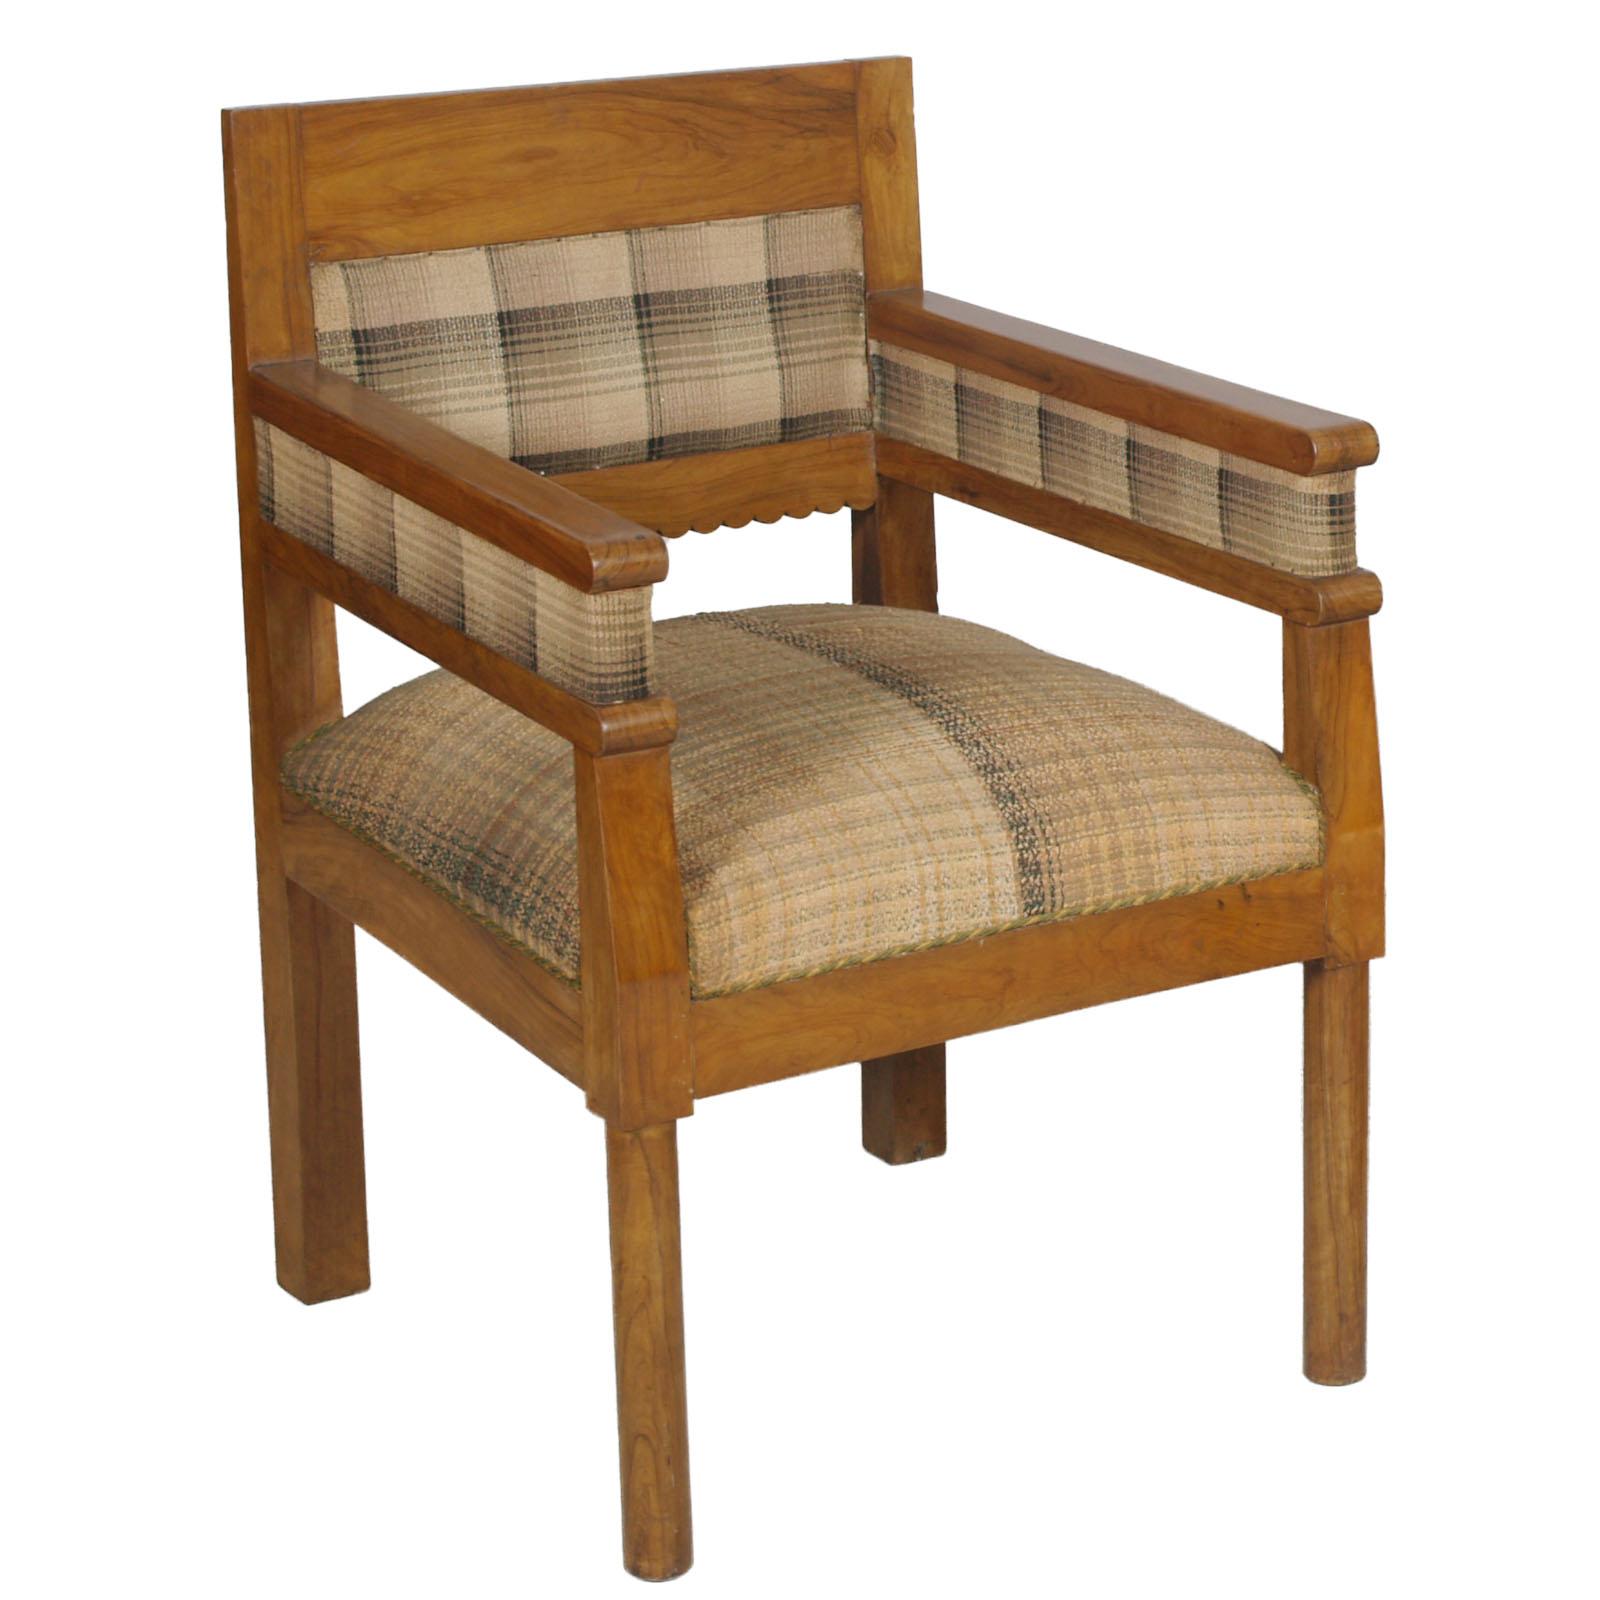 1920er Jahre Ein Paar kostbare Art-Déco-Sessel aus massivem Olivenholz mit originalem Rohgewebe. Der Stoff des einen Sessels hat einen originalen Aufnäher, der,  verschönert den Look. 
Federsitz
Dieses Sesselpaar stammt aus einer alten Residenz am